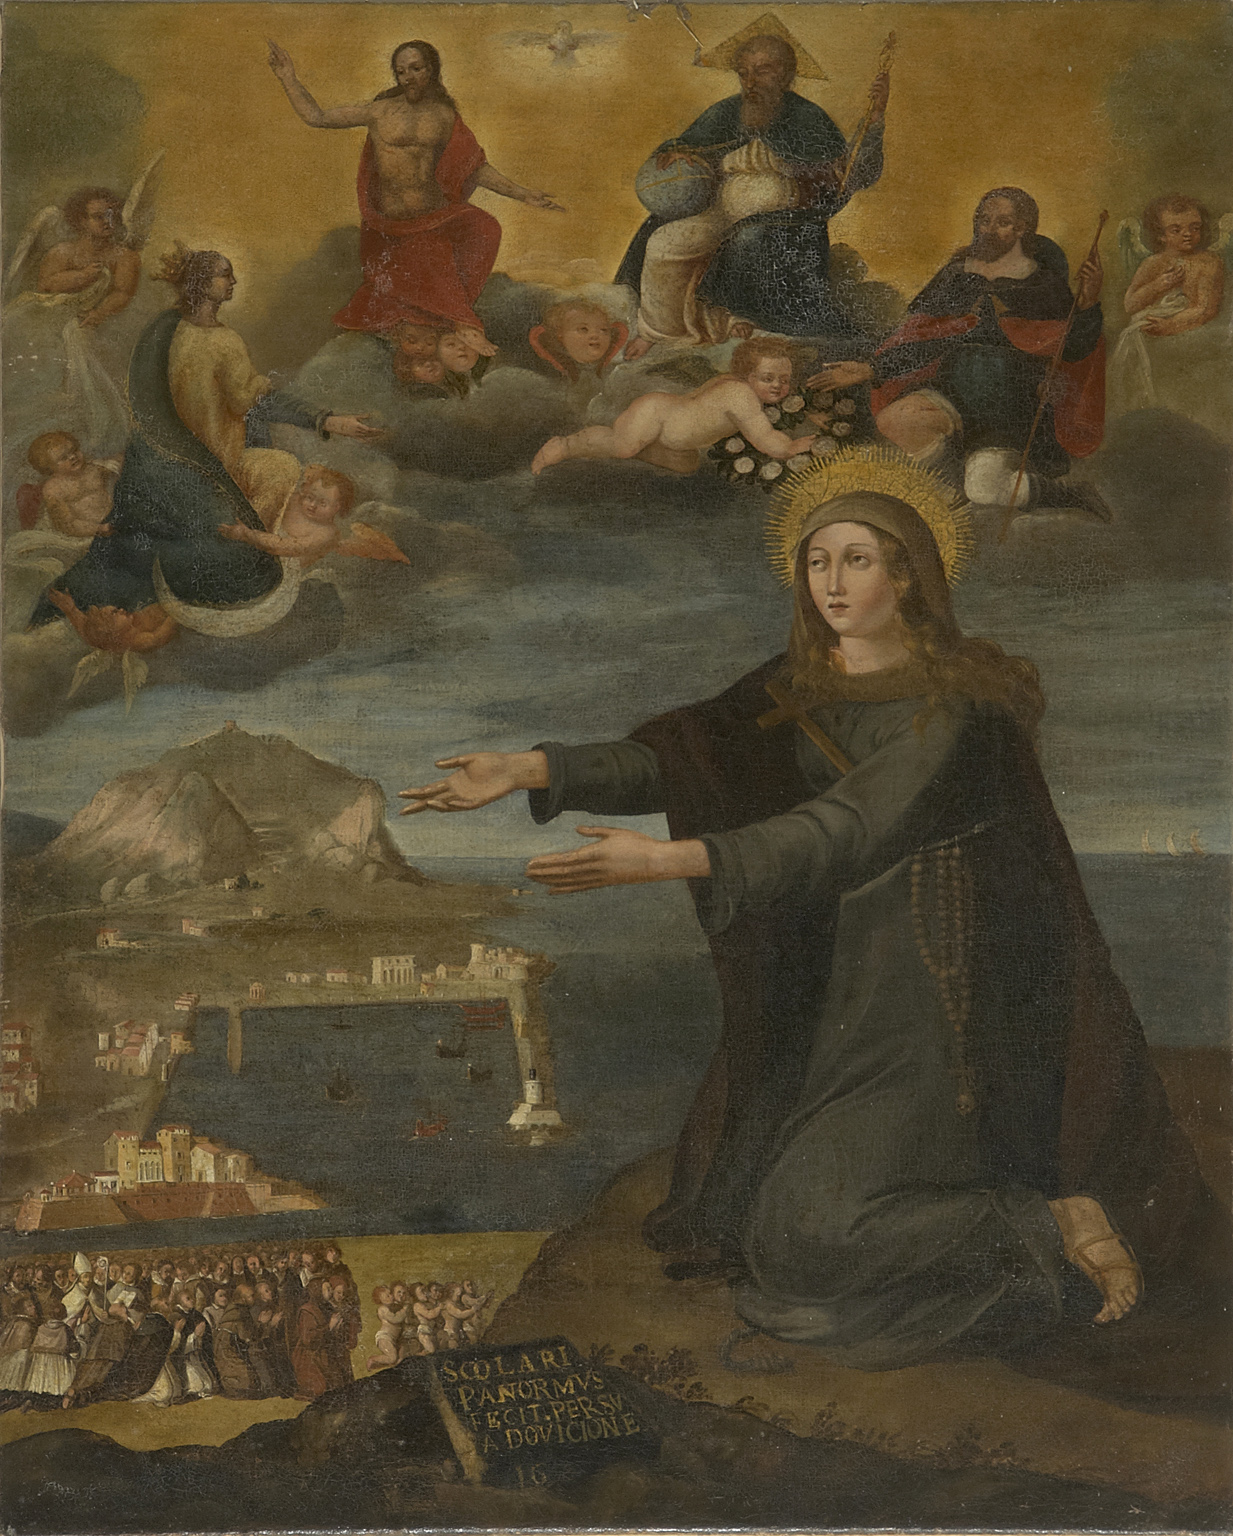 Fig. 4 dipinto seicentesco raffigurante l’Intercessione di santa Rosalia con la veduta del porto di Palermo. Brenzio, San Giovanni Battista 